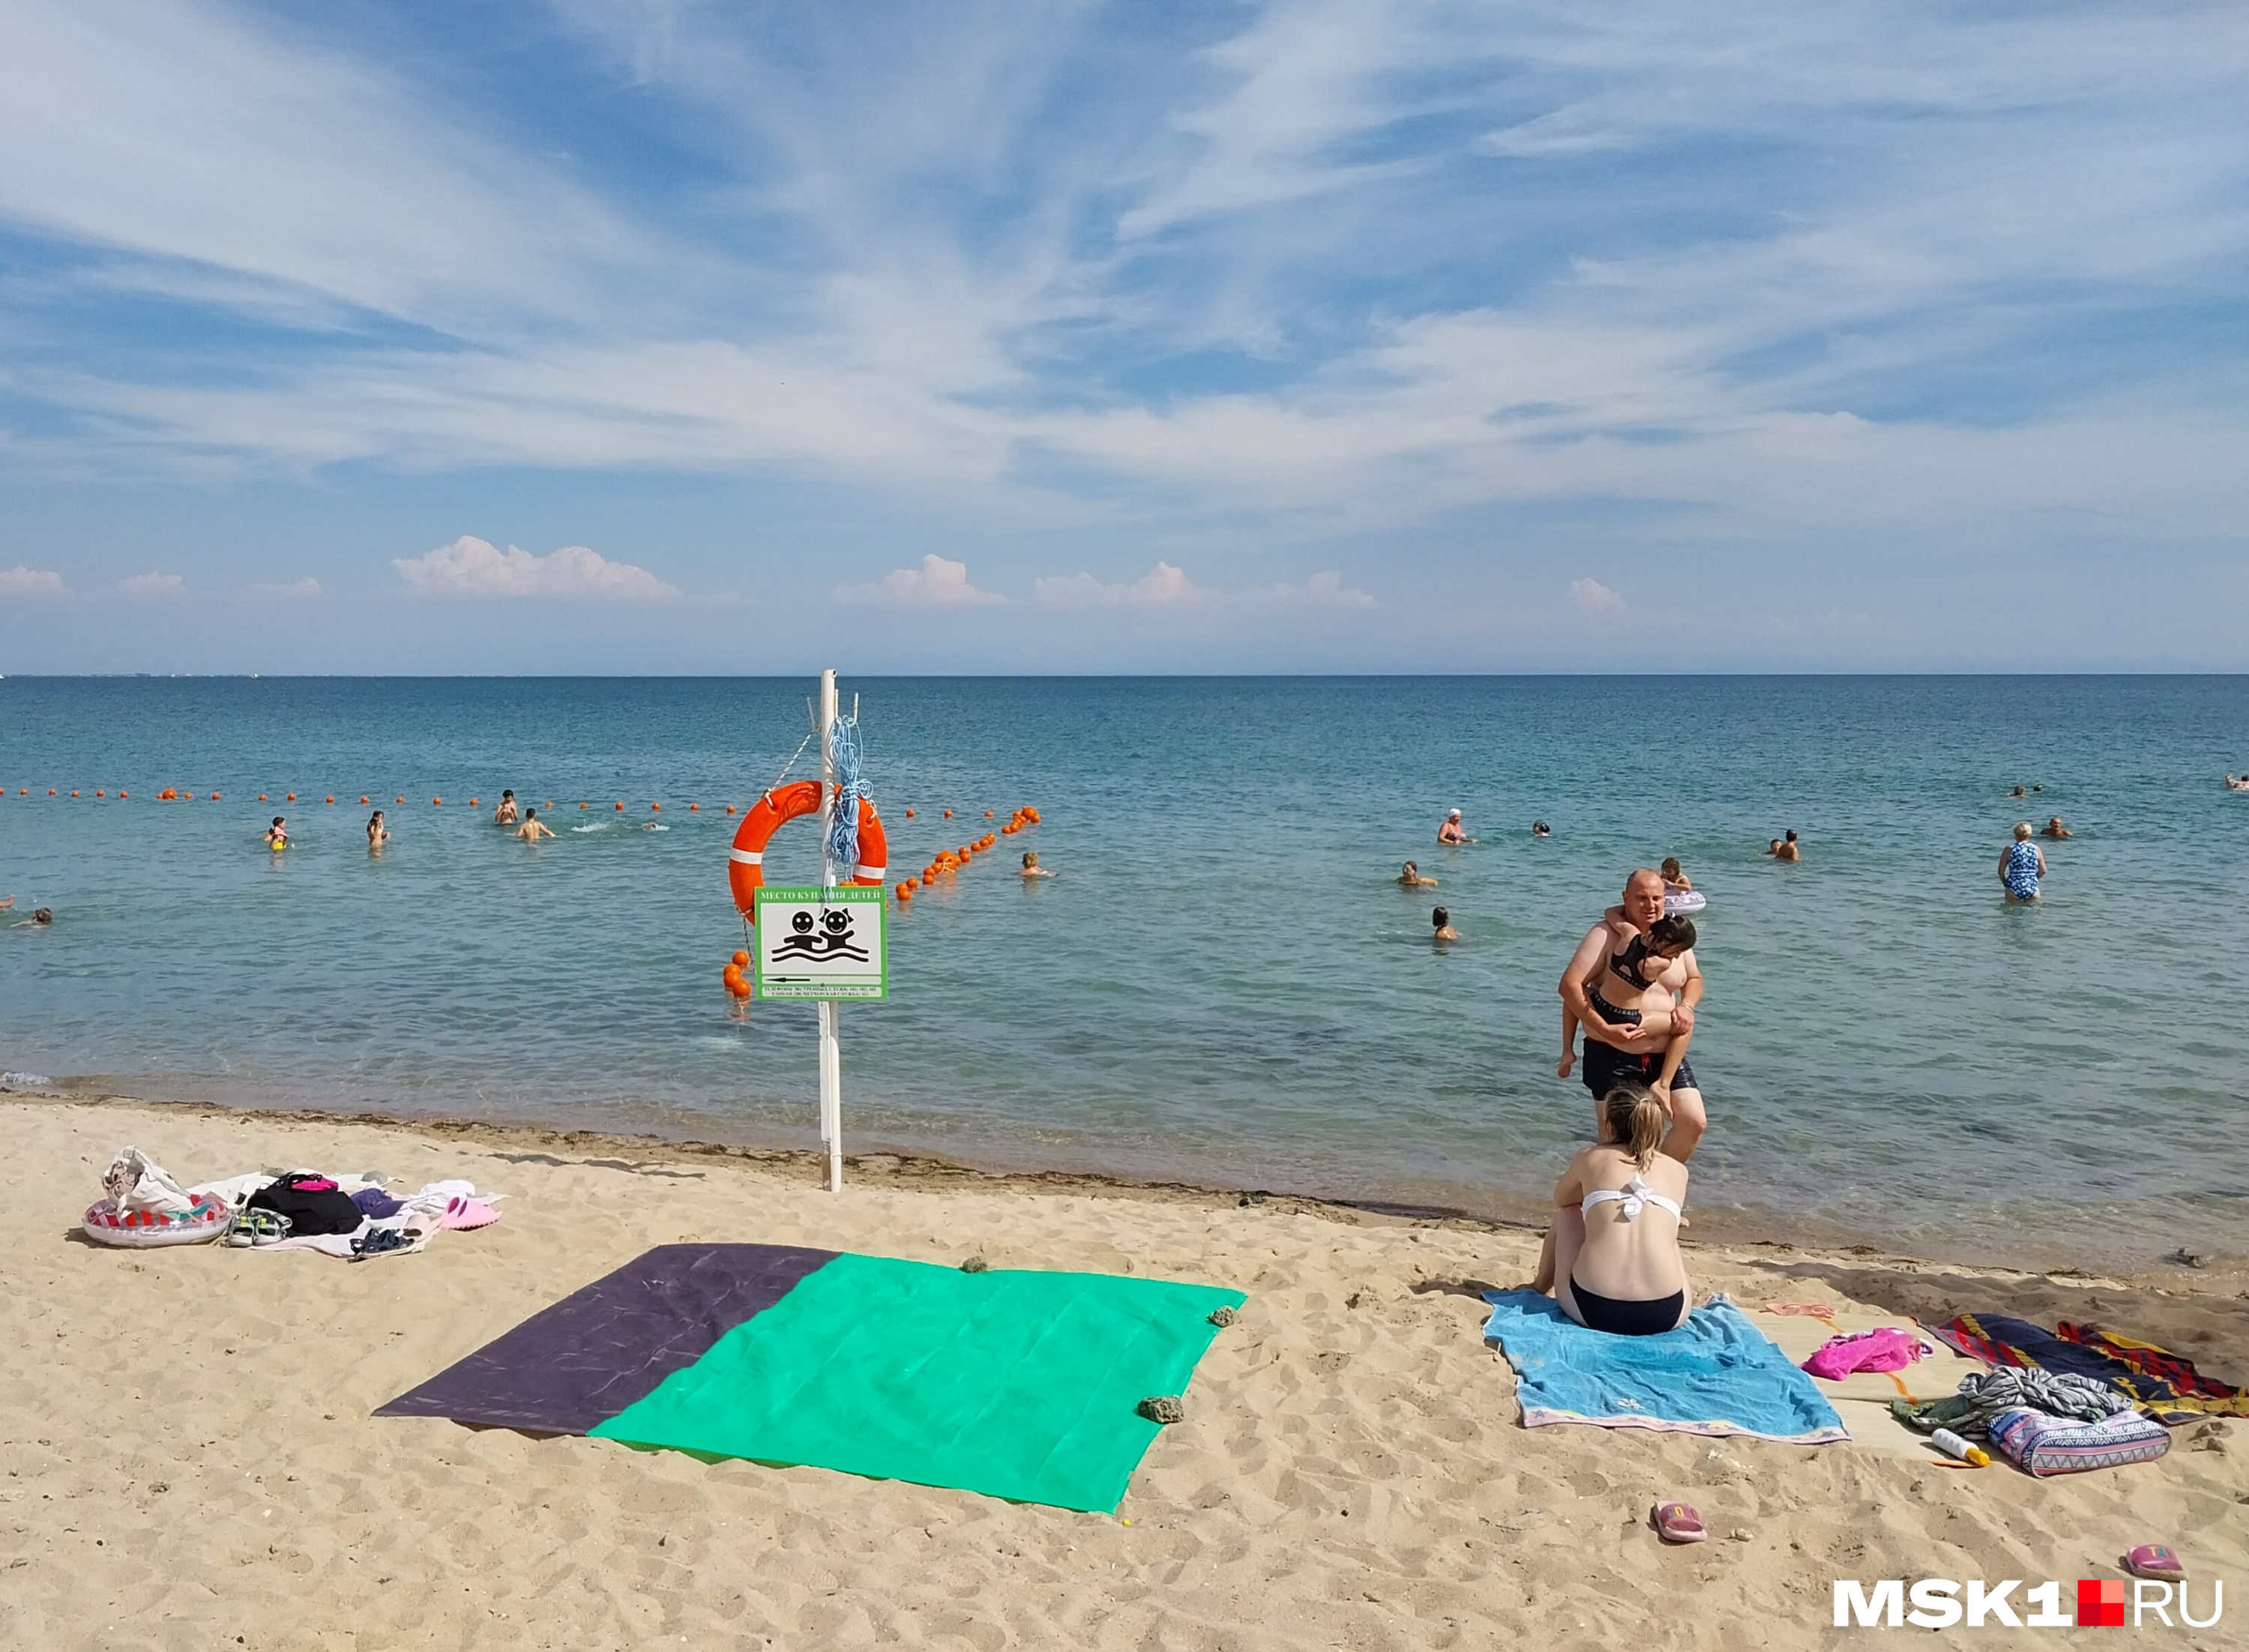 Скоро крымские пляжи станут «бездетными» — заканчиваются смены в лагерях, родители увозят школьников домой